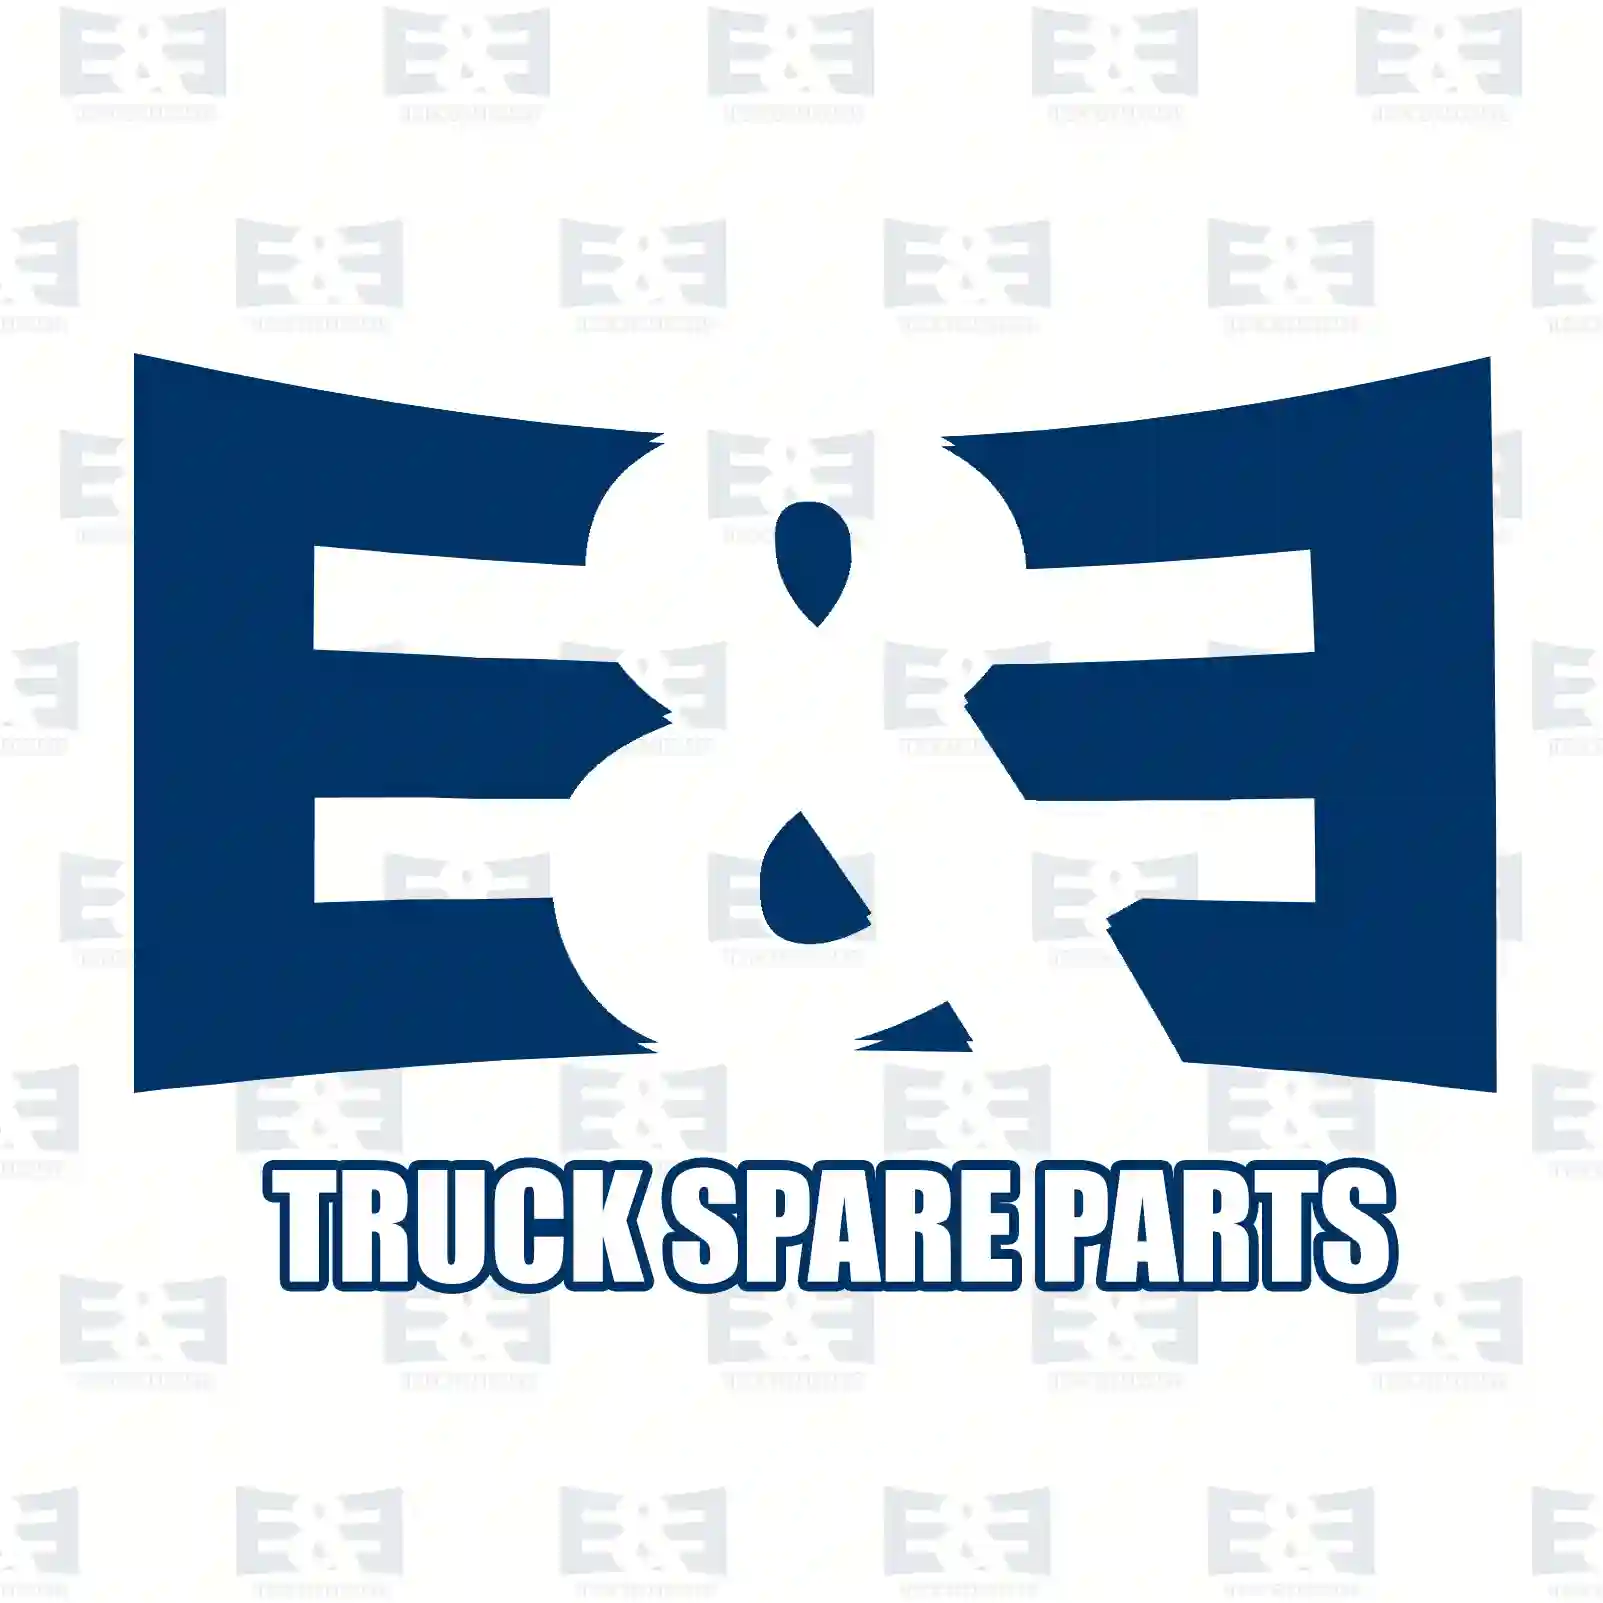 Level valve, 2E2283974, 1506573, 81436106121, 81436106125 ||  2E2283974 E&E Truck Spare Parts | Truck Spare Parts, Auotomotive Spare Parts Level valve, 2E2283974, 1506573, 81436106121, 81436106125 ||  2E2283974 E&E Truck Spare Parts | Truck Spare Parts, Auotomotive Spare Parts